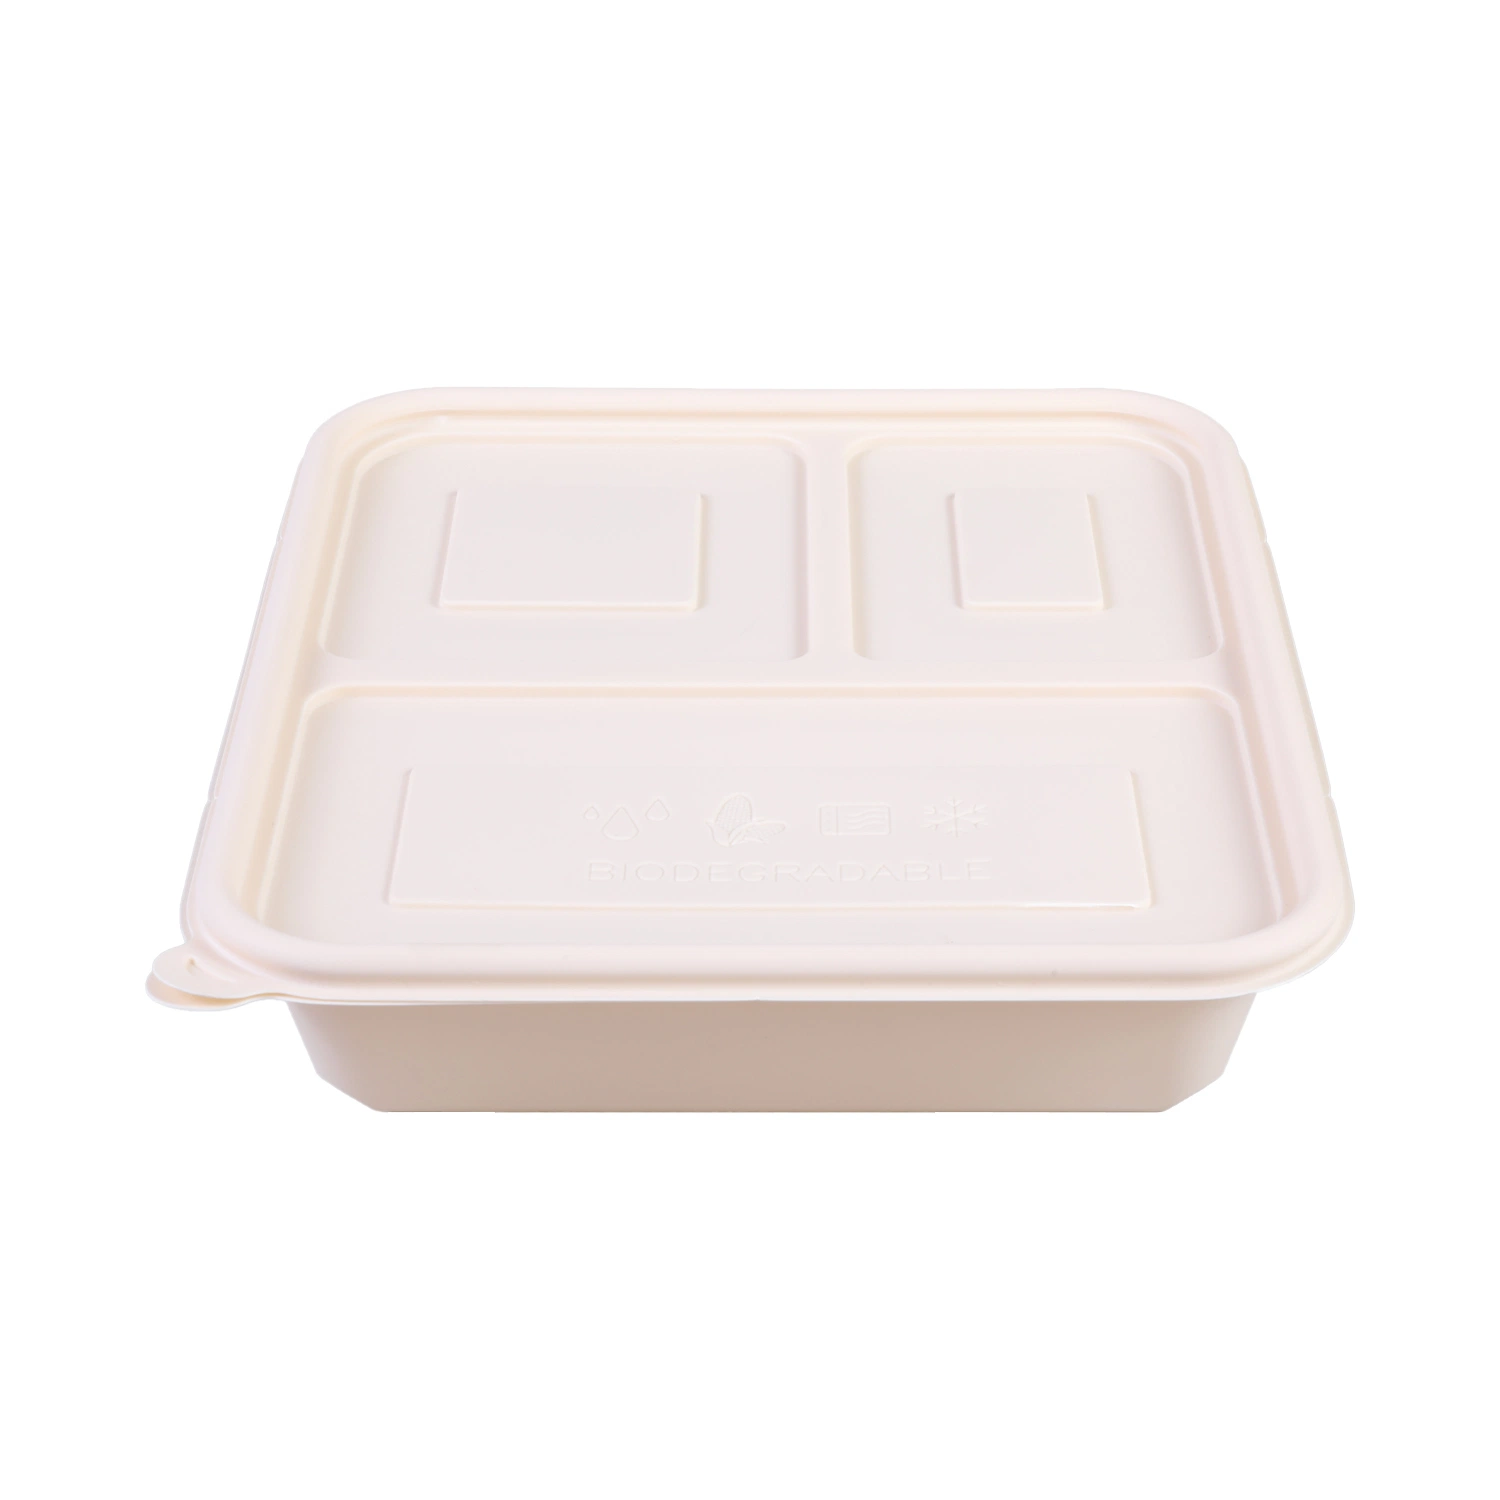 Farinha de amido de milho biodegradáveis Recipiente Alimentar Lunch-Box para compartimento 3/4/5